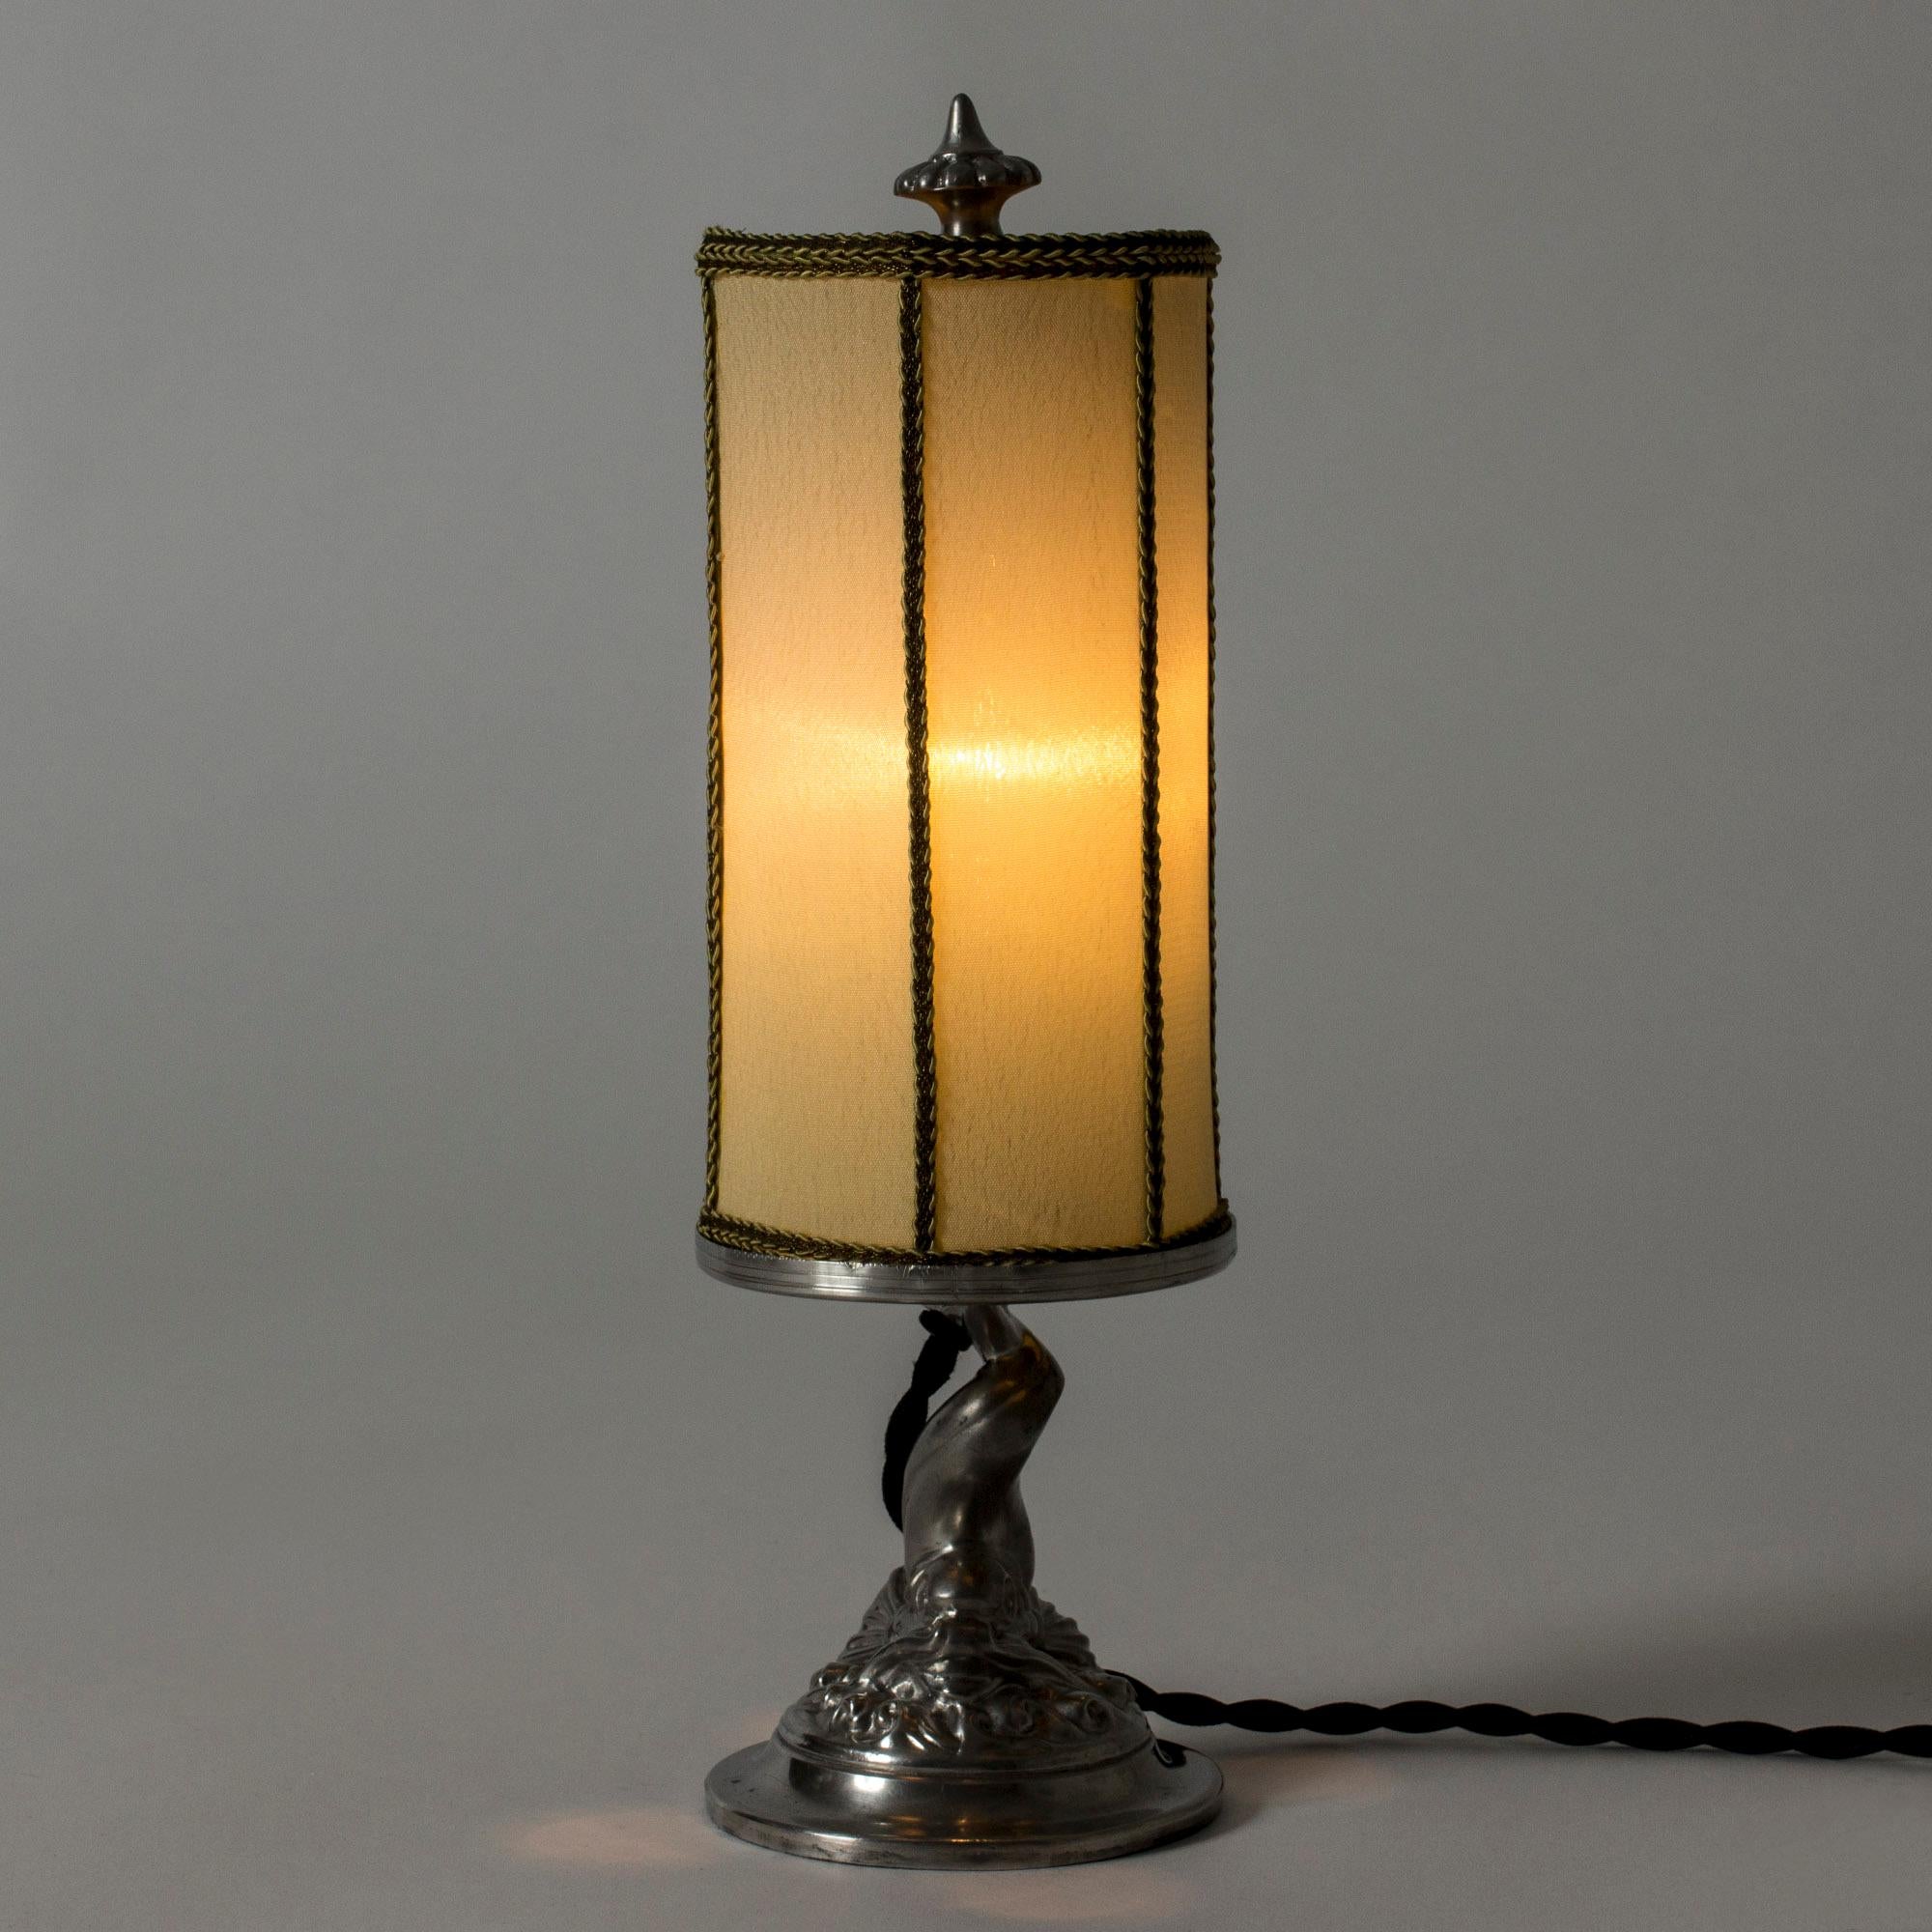 Belle lampe de table des années 1930 de GAB, fabriquée en étain. Base en forme de poisson stylisé dans un tourbillon d'eau. Teinte textile originale.